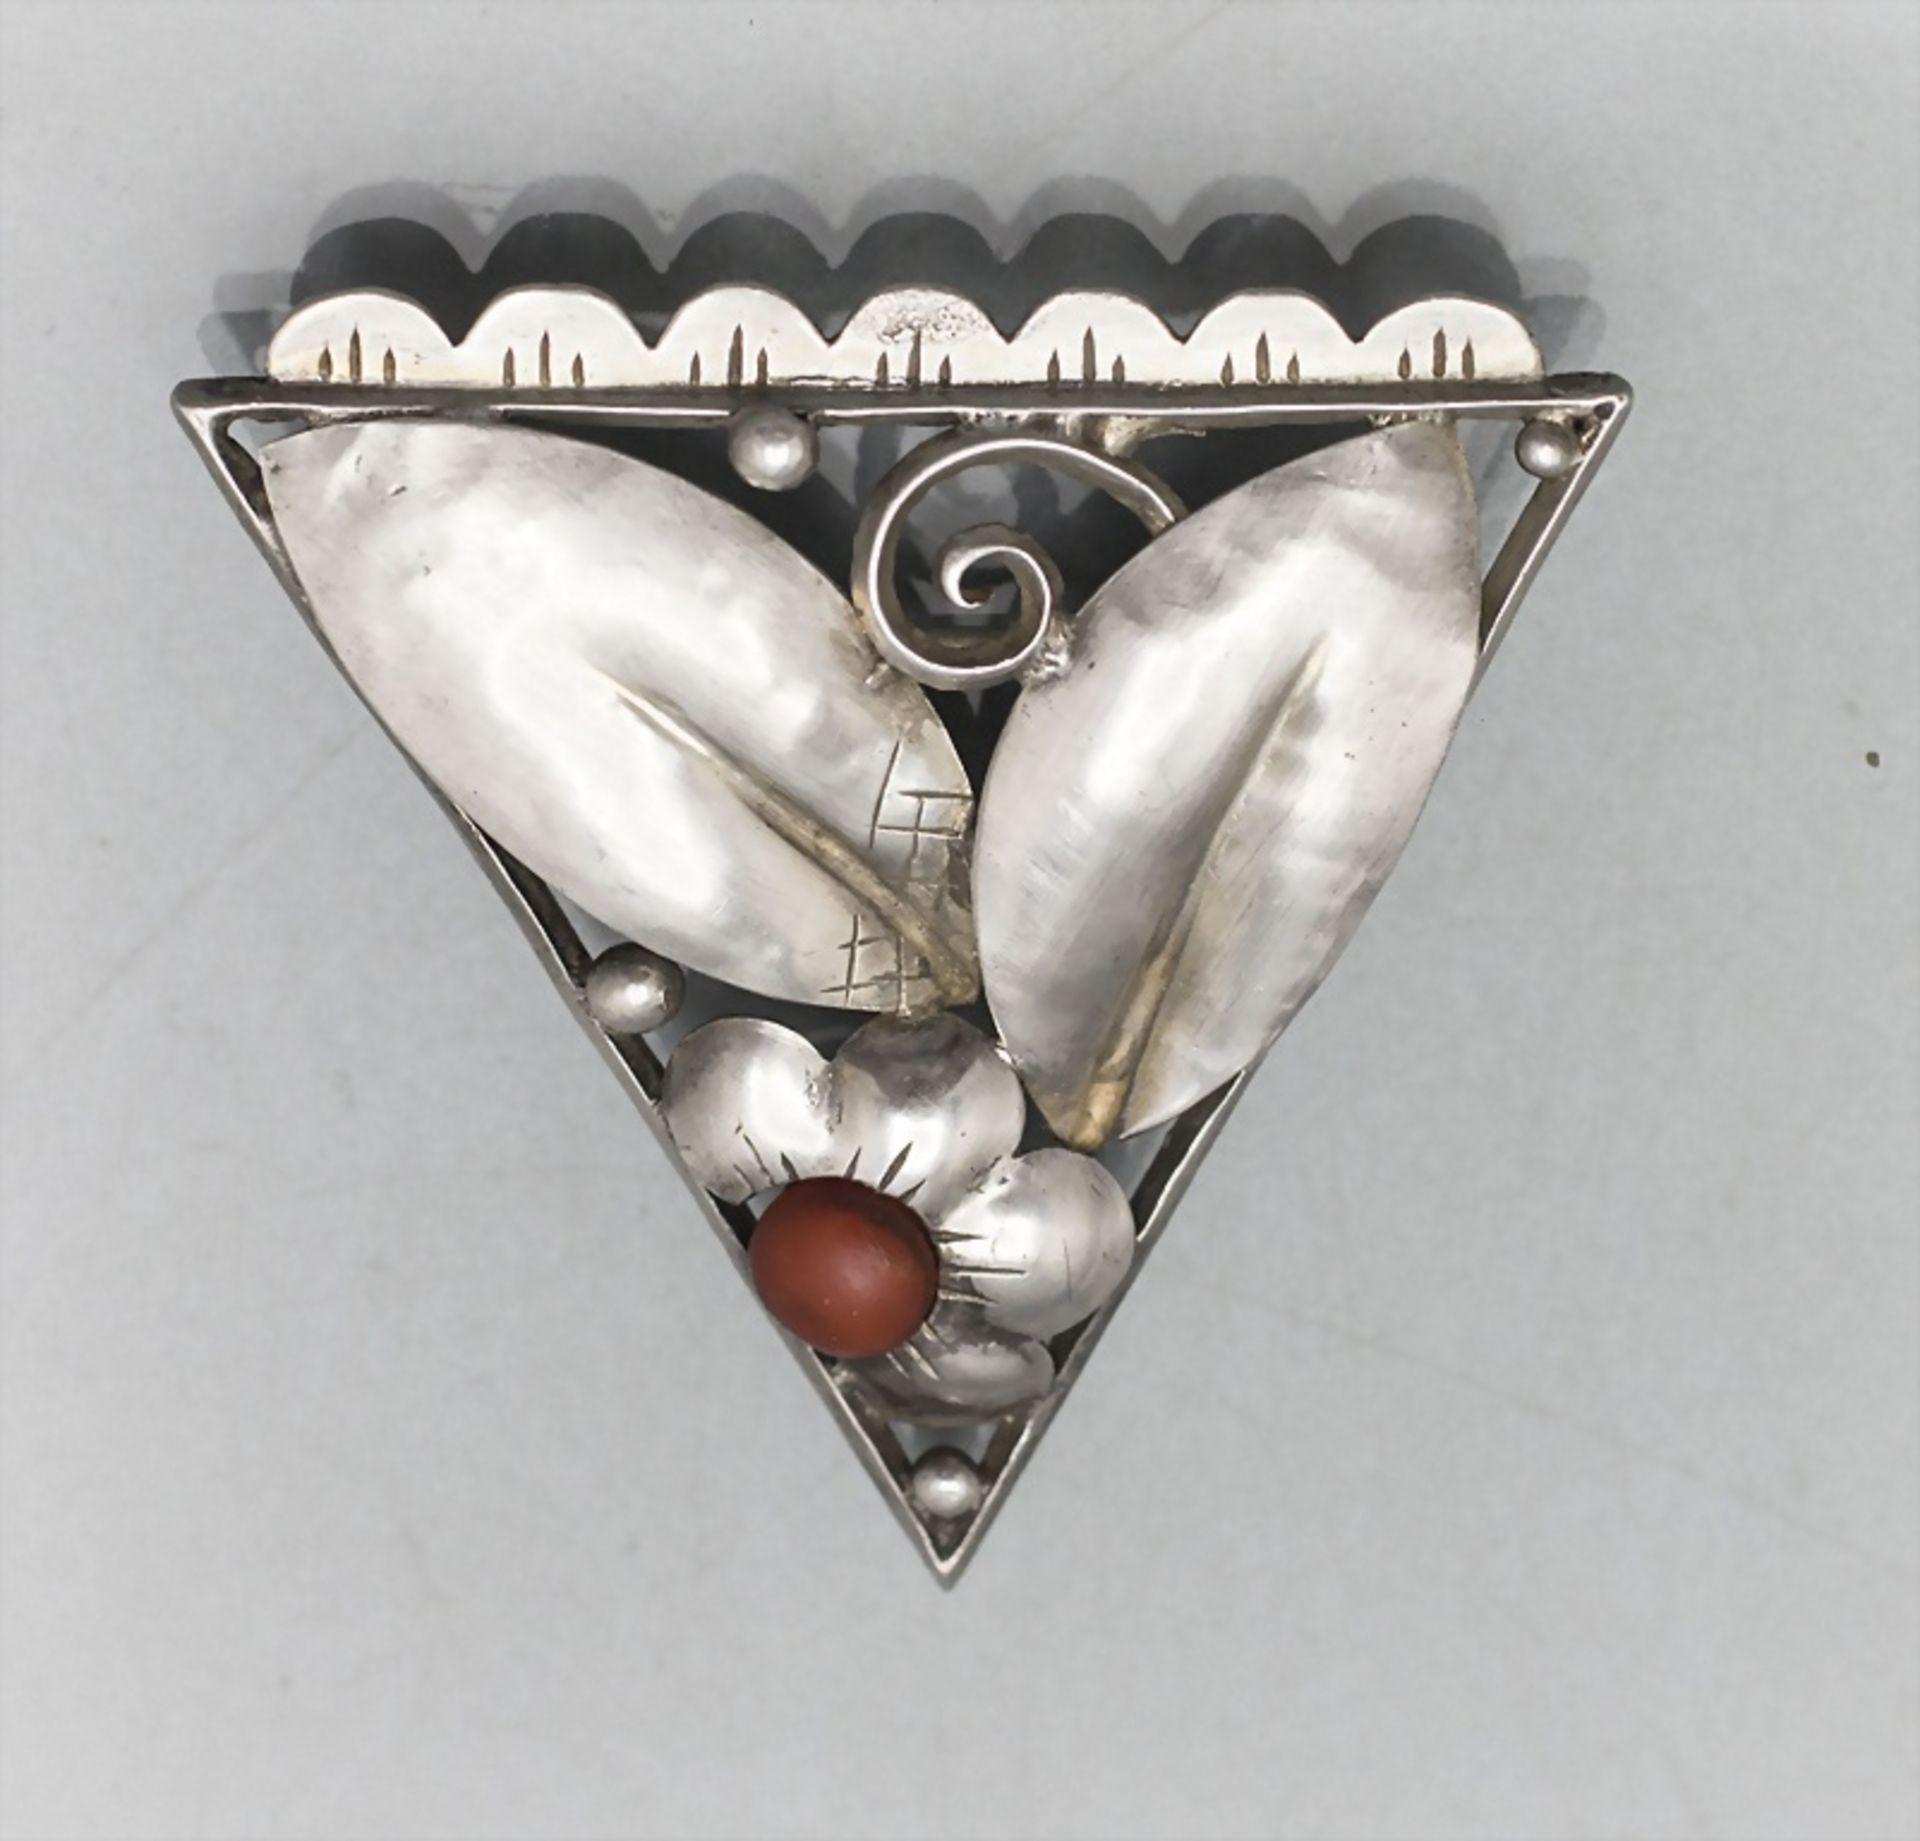 Art Deco Silber Brosche 'Dreieck' / An Art Deco silver brooch 'Triangle', 1920/30